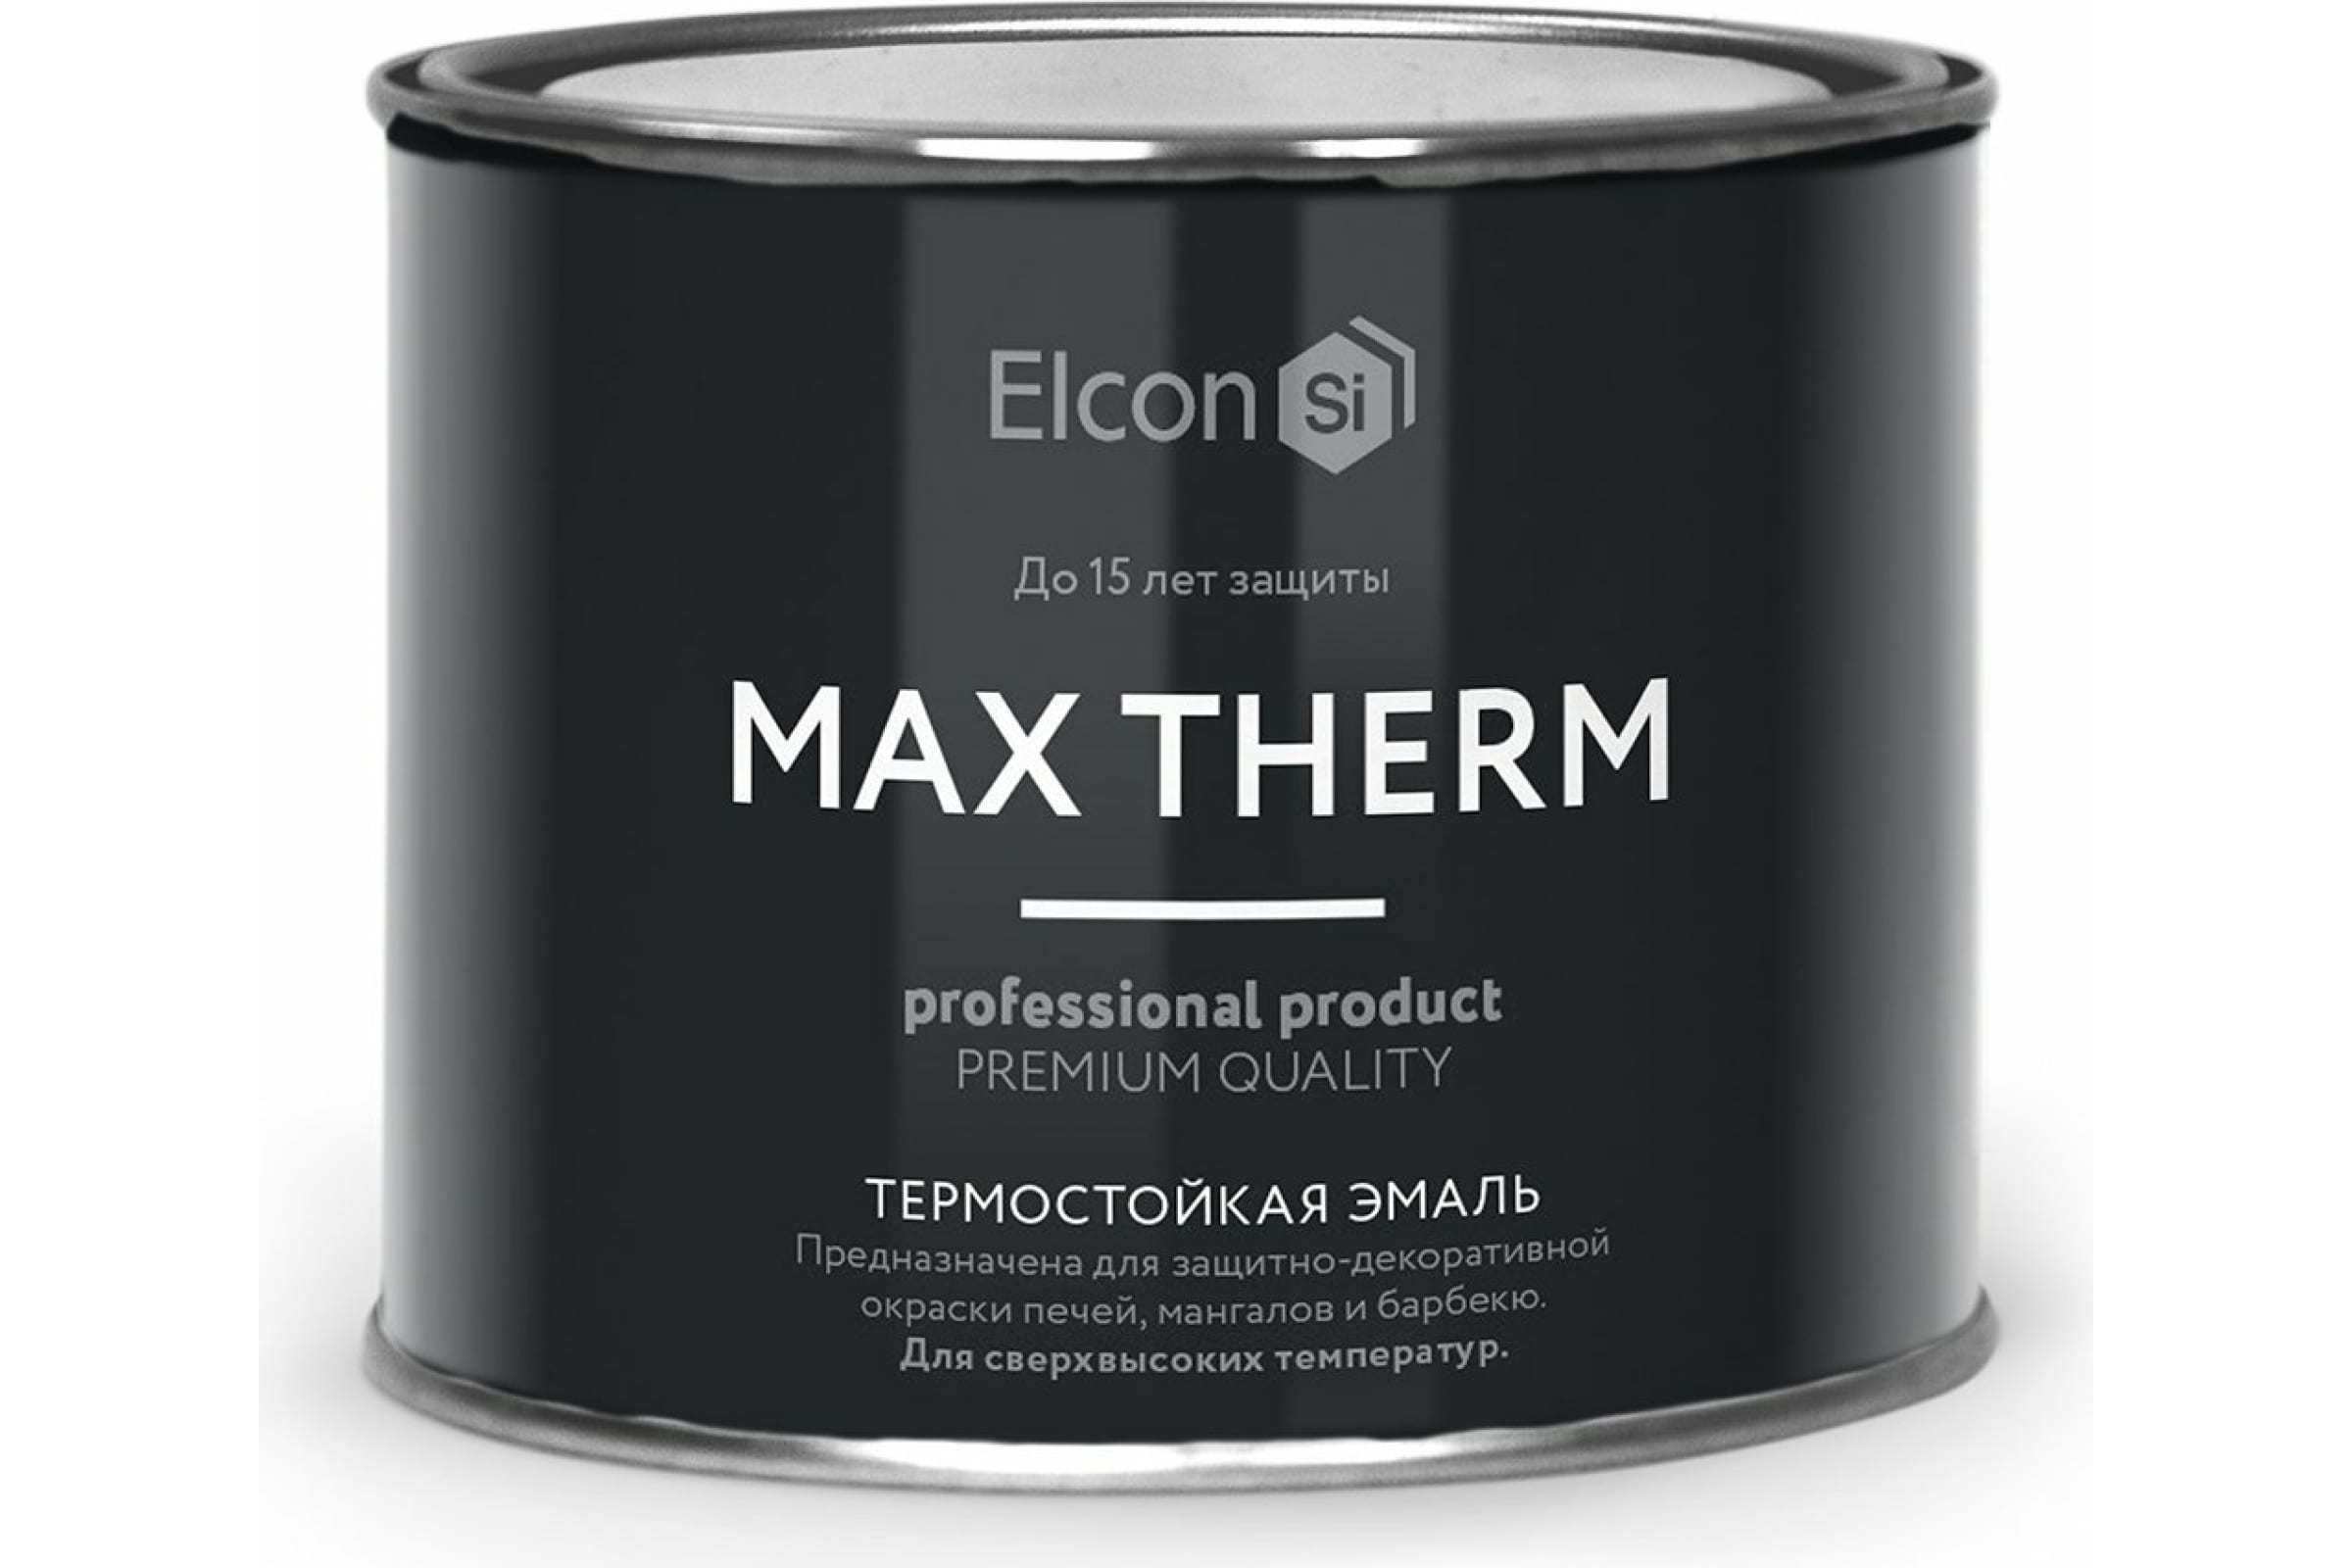 Термостойкая антикоррозионная эмаль Elcon Max Therm до 400 градусов, 0,4 л, синяя термостойкая антикоррозионная эмаль elcon max therm до 400 градусов 0 4 л ярко красная